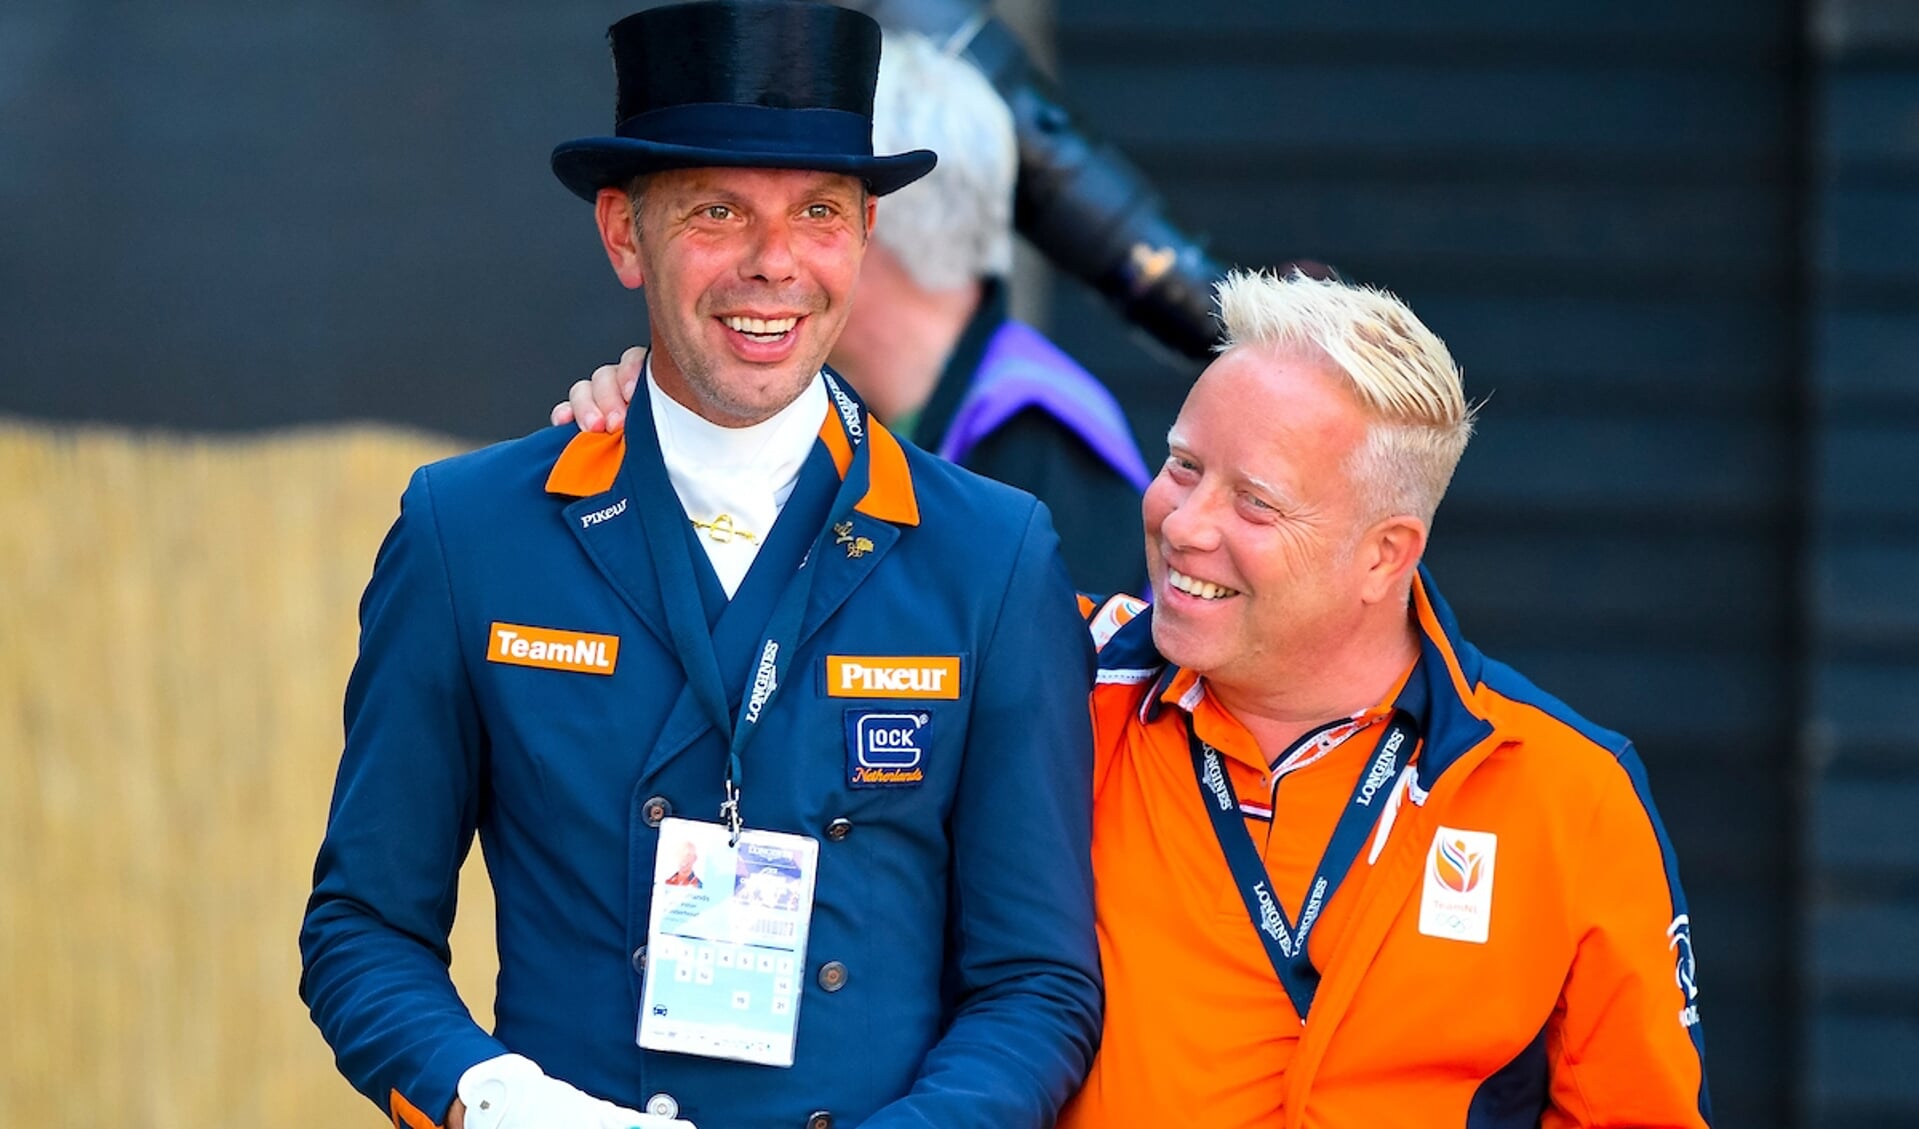 Hans Peter Minderhoud - Maarten van der Heijden
FEI European Championships 2019
© DigiShots